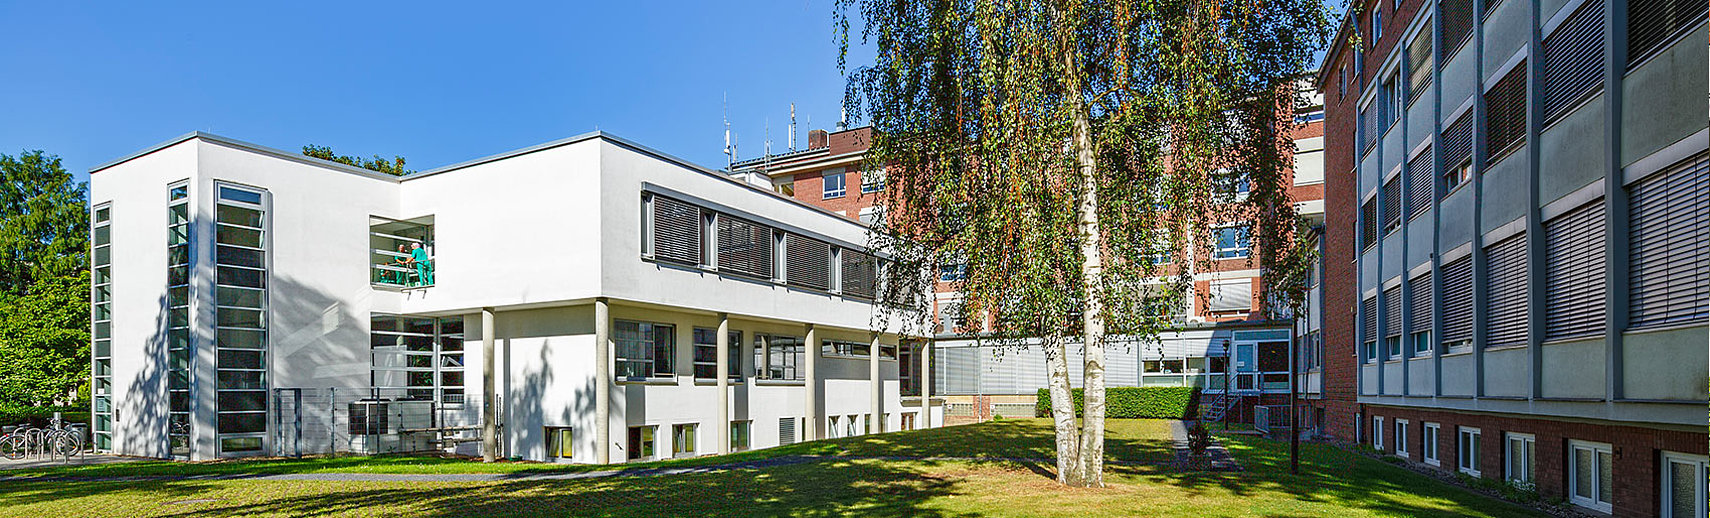 Das Maria-Hilf-Krankenhaus in Bergheim